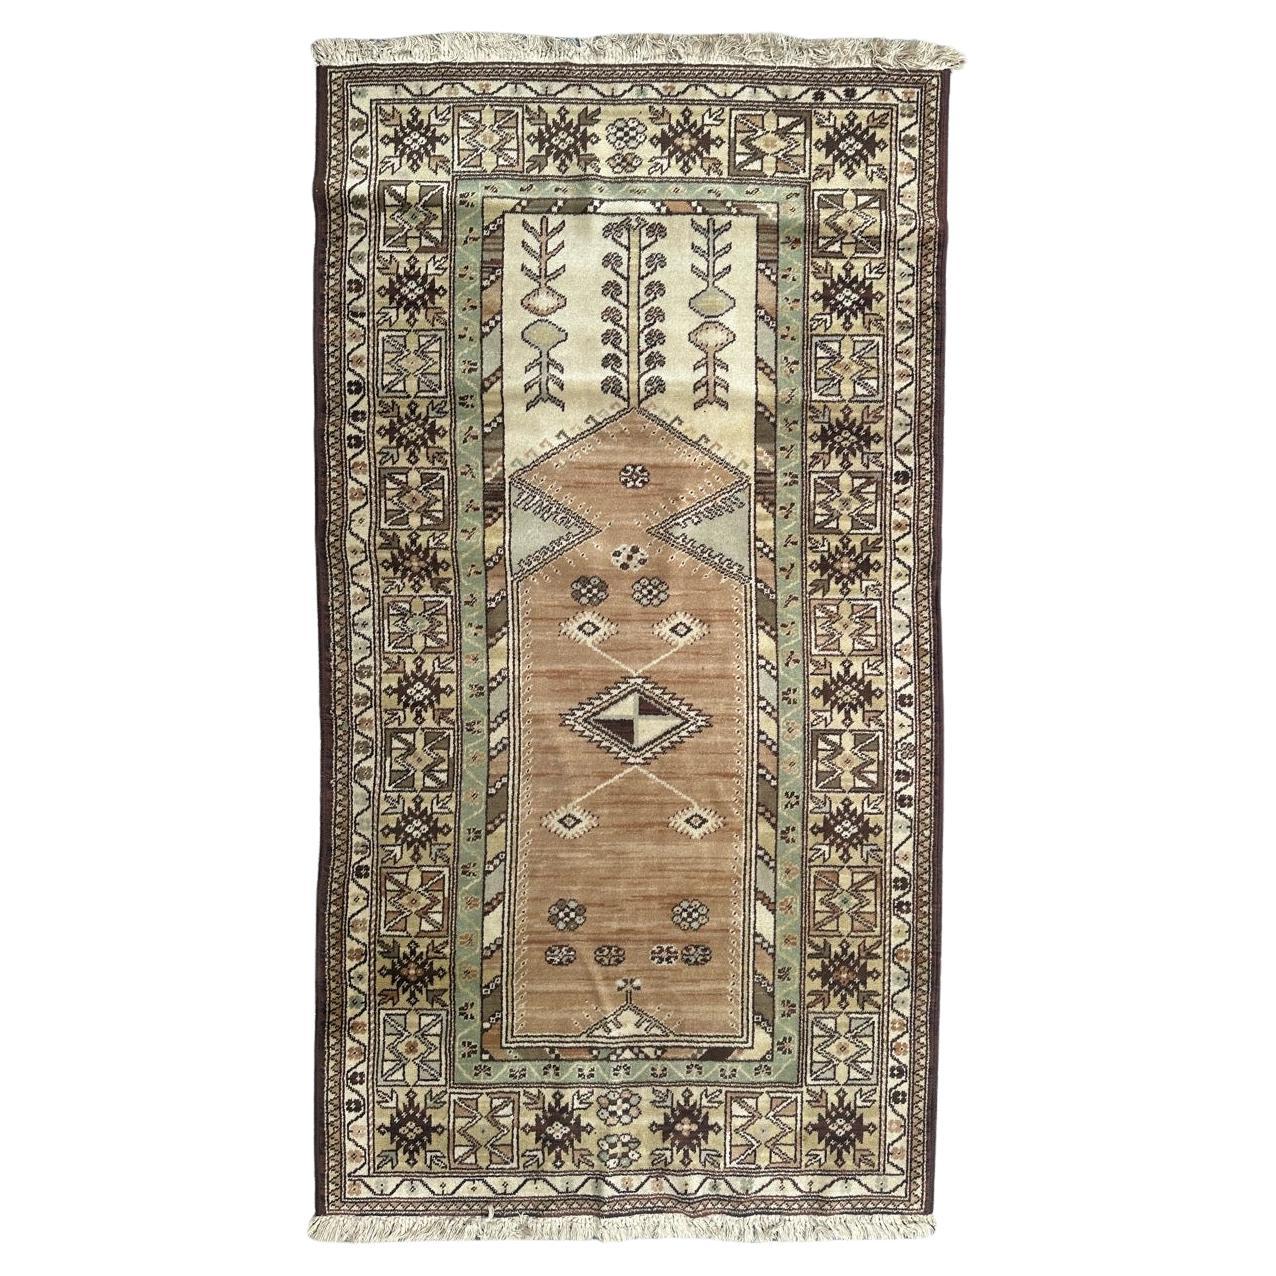 Le joli tapis vintage de style turc de Bobyrug